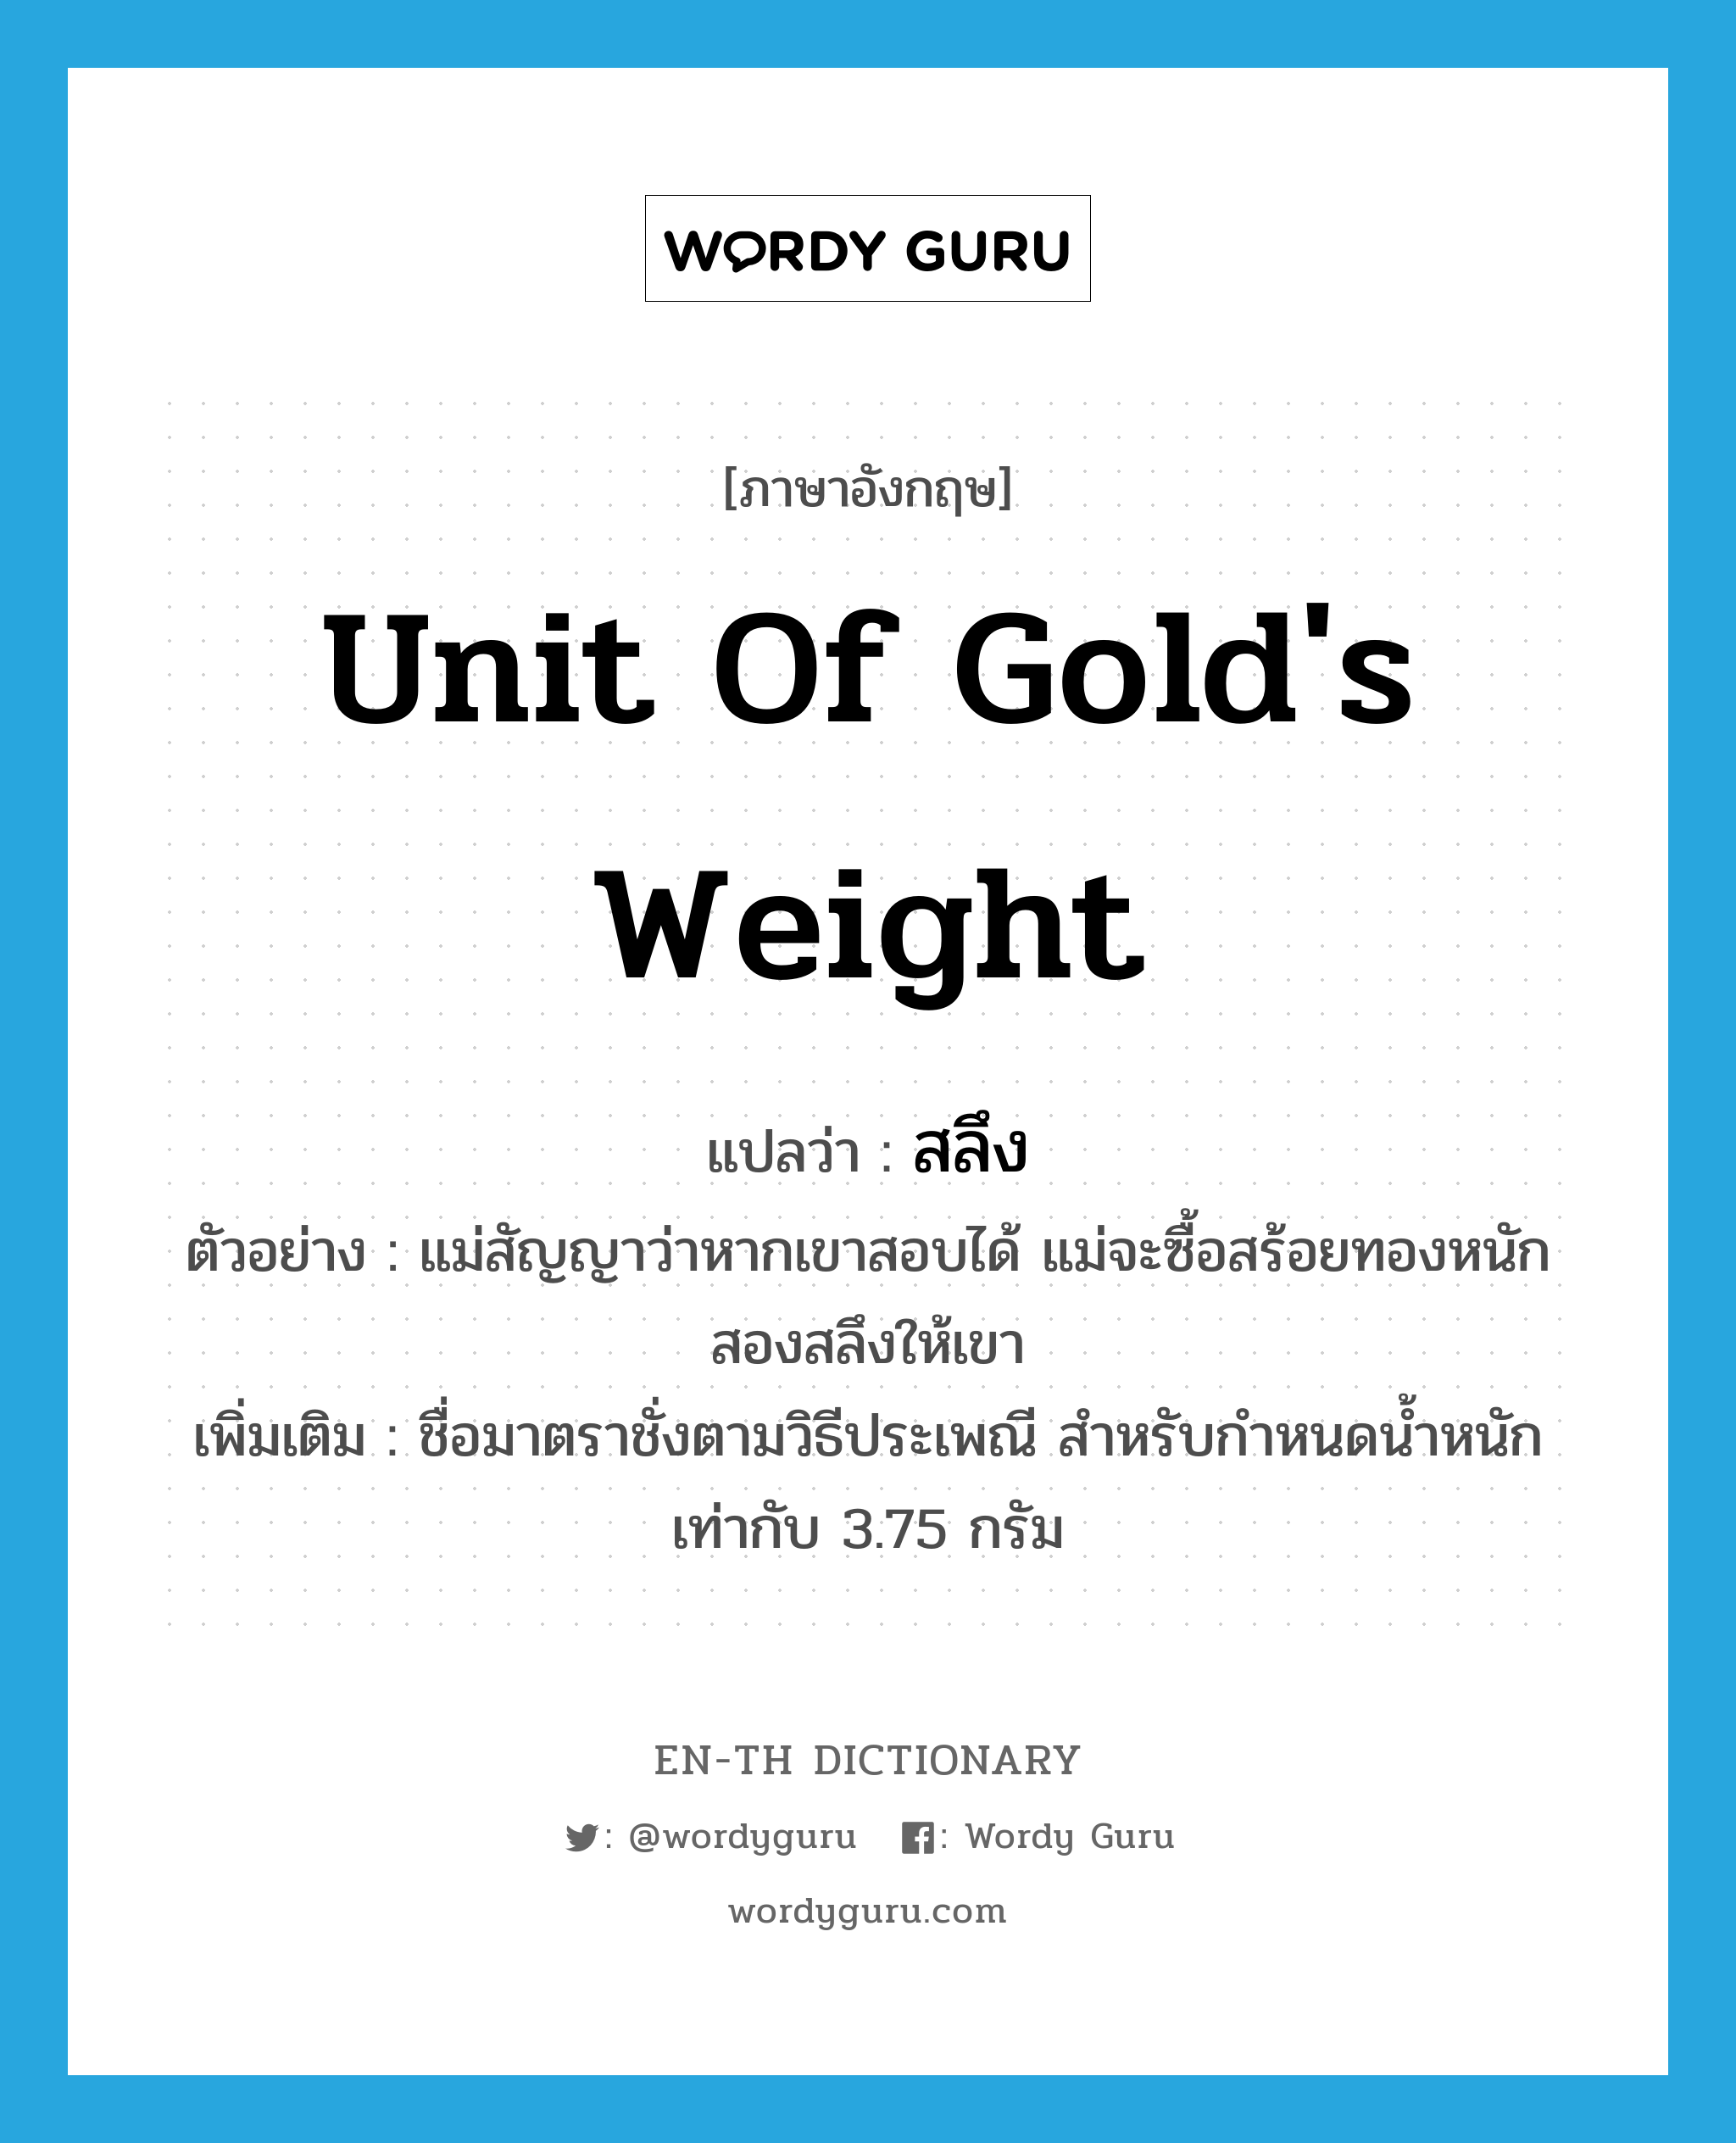 unit of gold's weight แปลว่า?, คำศัพท์ภาษาอังกฤษ unit of gold's weight แปลว่า สลึง ประเภท N ตัวอย่าง แม่สัญญาว่าหากเขาสอบได้ แม่จะซื้อสร้อยทองหนักสองสลึงให้เขา เพิ่มเติม ชื่อมาตราชั่งตามวิธีประเพณี สำหรับกำหนดน้ำหนักเท่ากับ 3.75 กรัม หมวด N